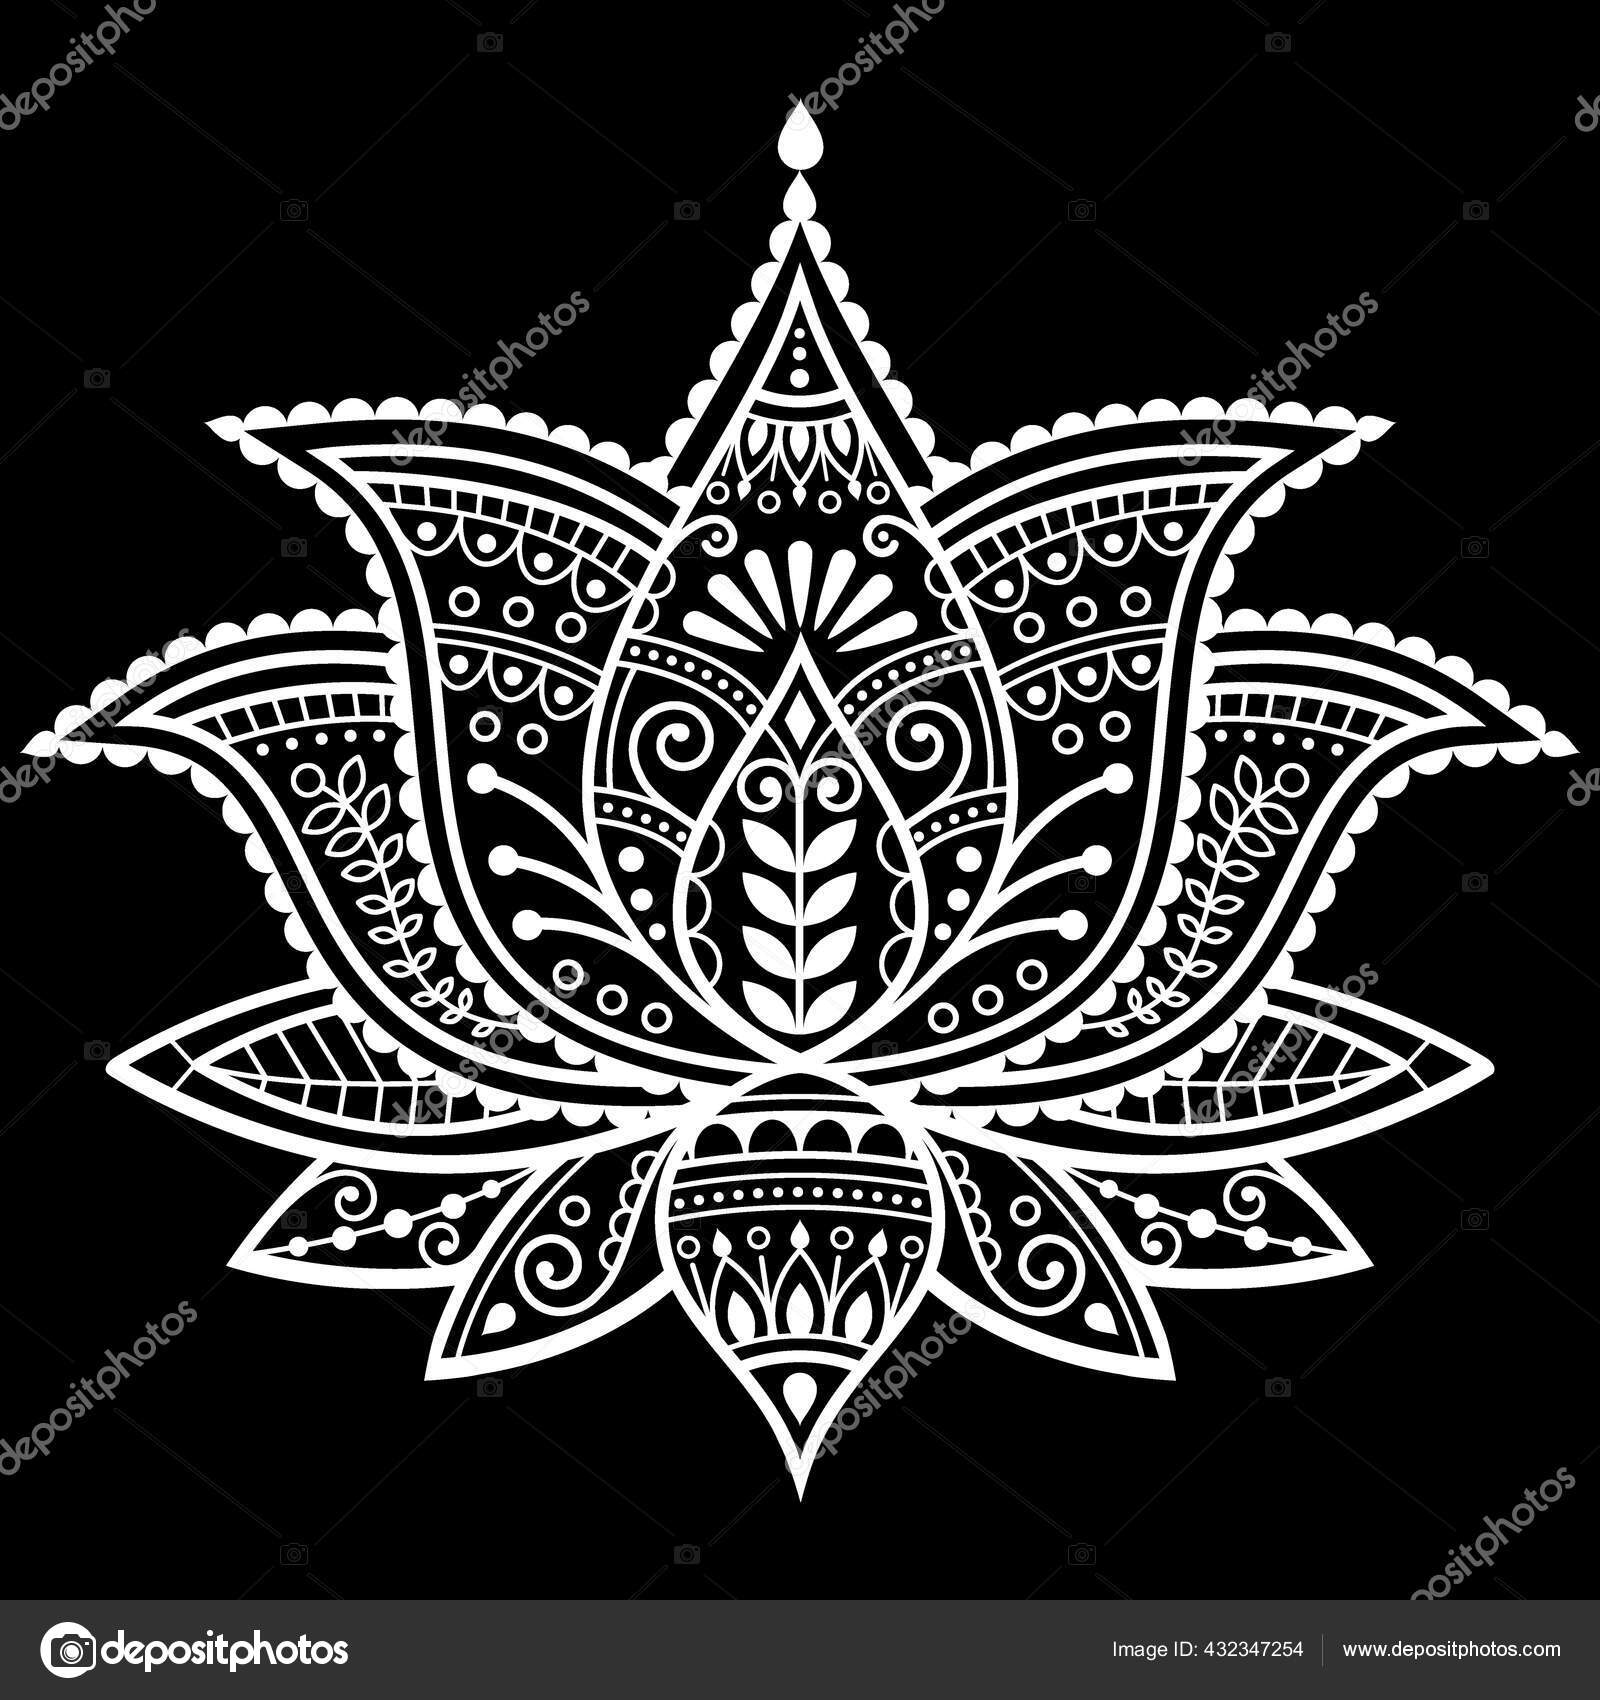 Lotus Mandalas for Greeting Card, Invitation, Henna Drawing and